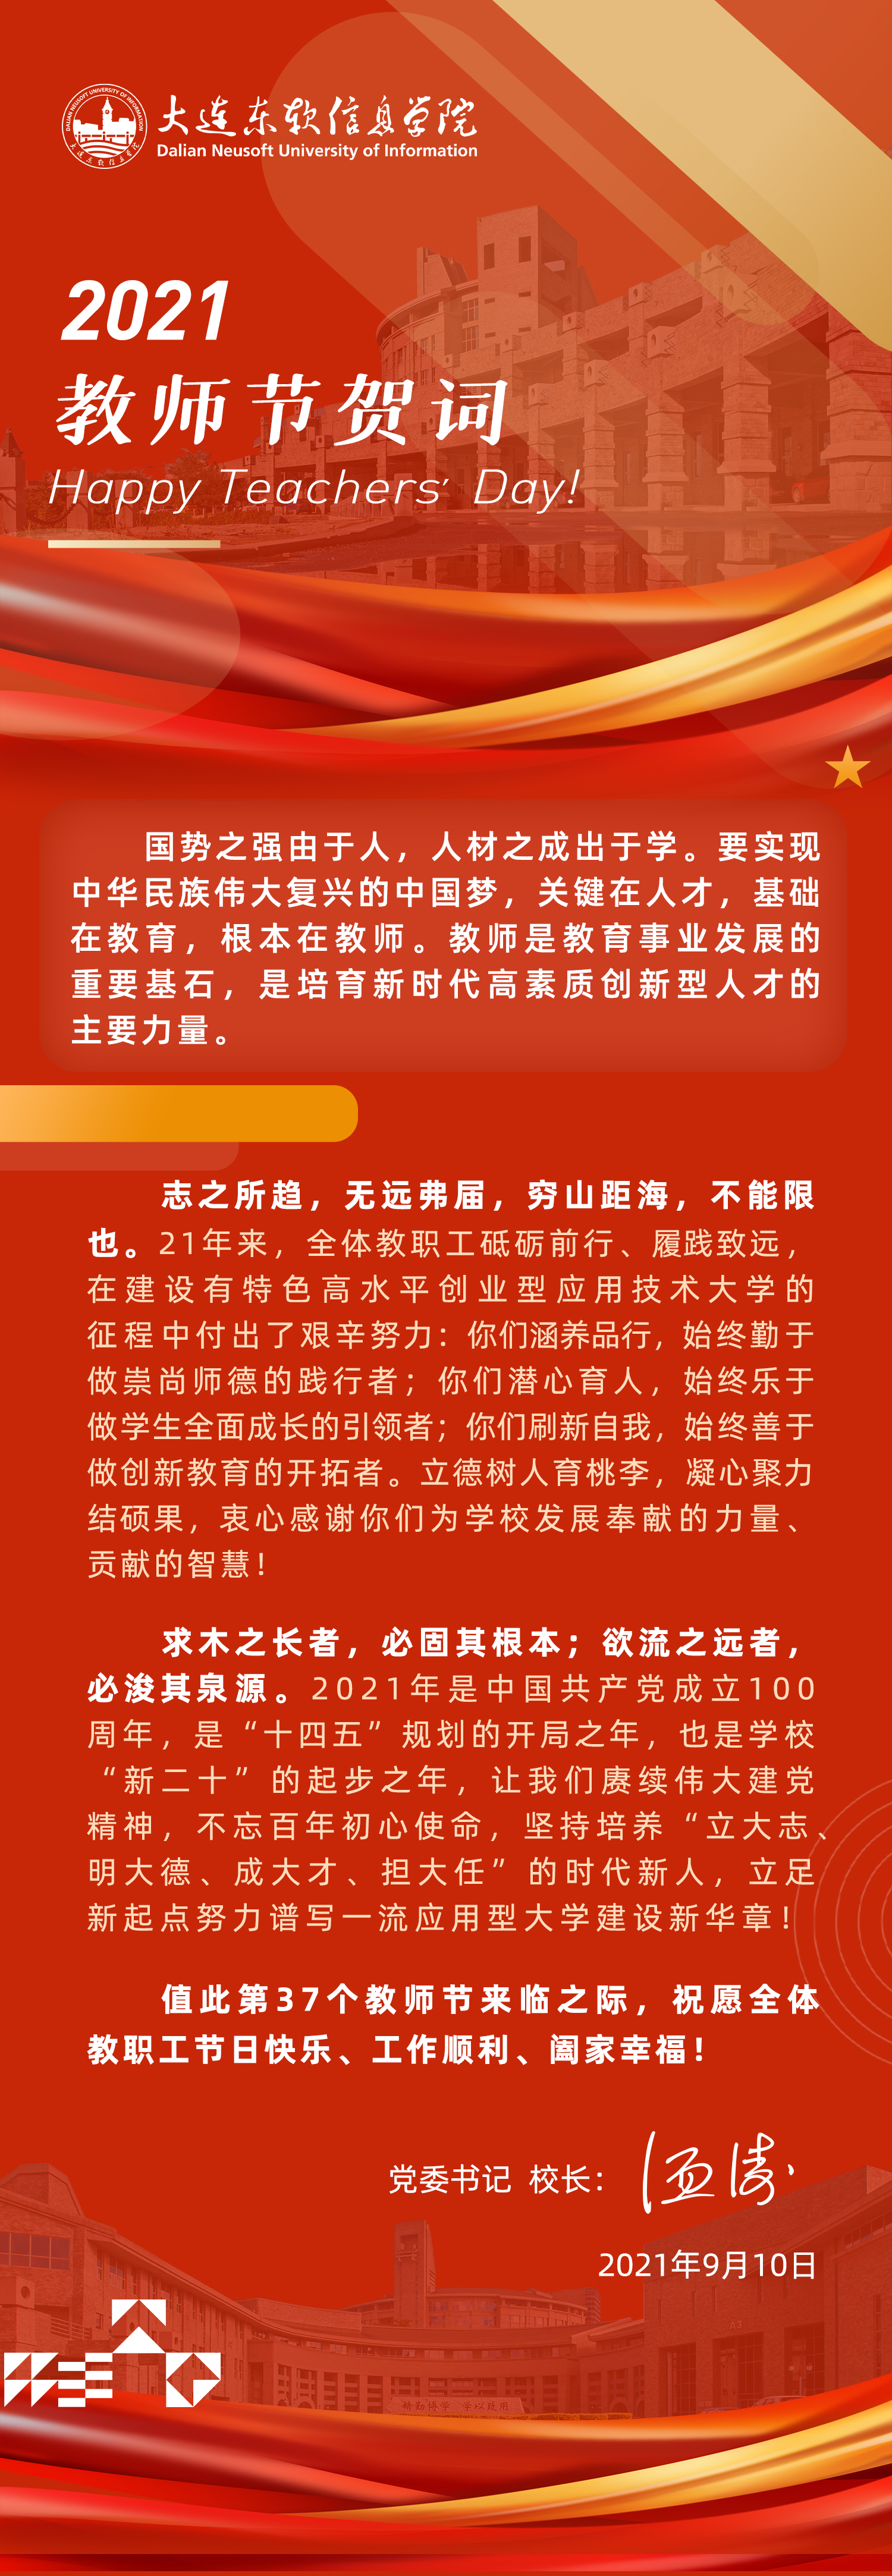 2021年教师节党委书记、校长温涛贺辞